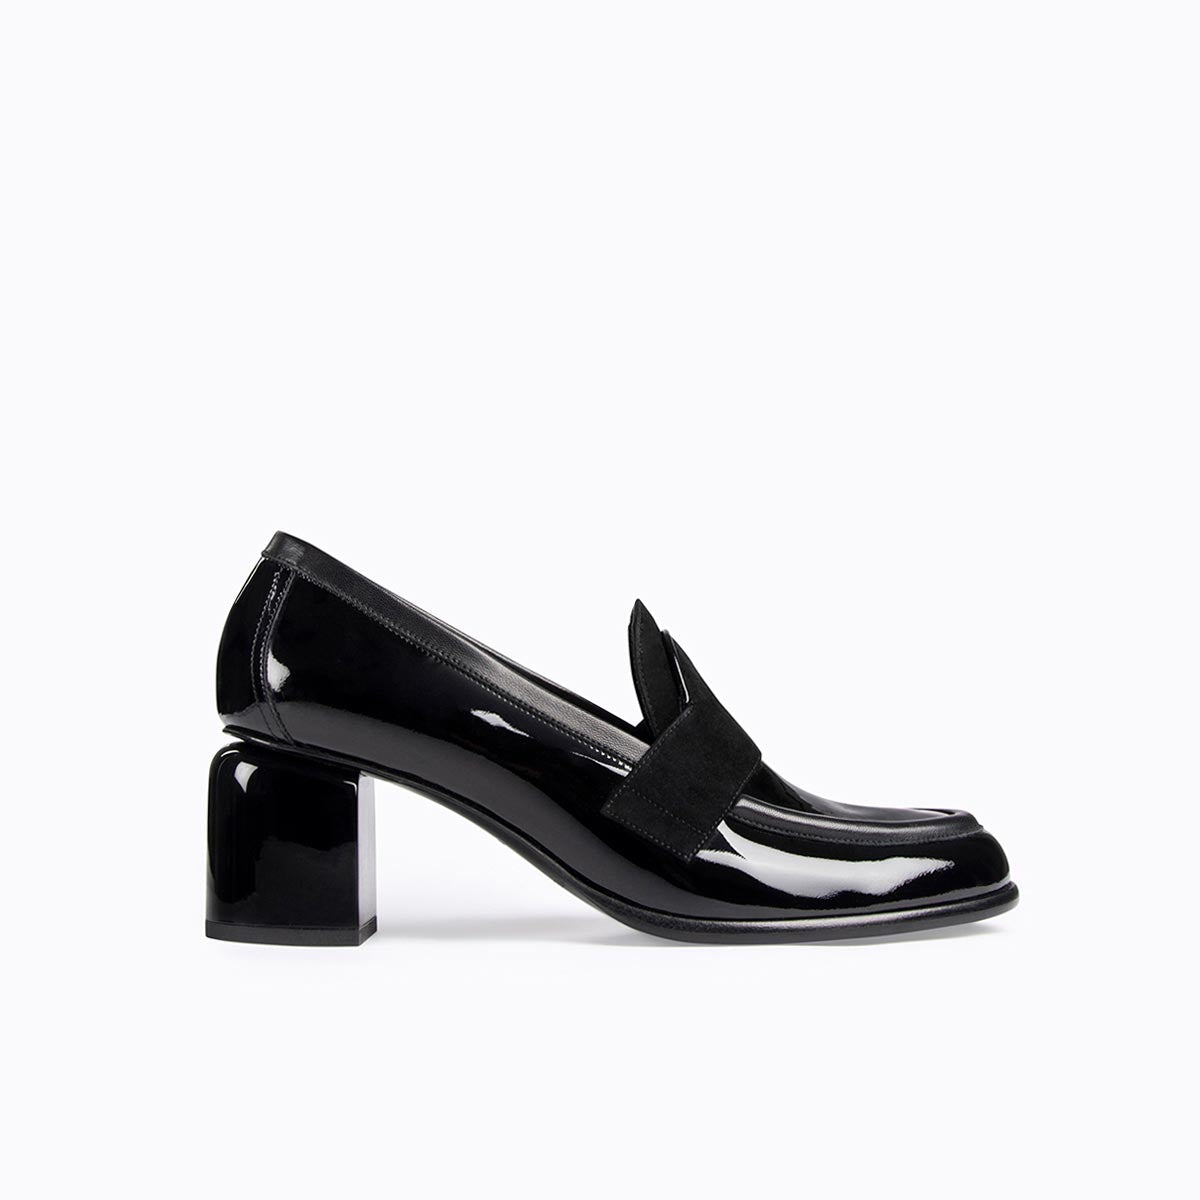 ETON women's heeled loafers in black leather — PIERRE HARDY